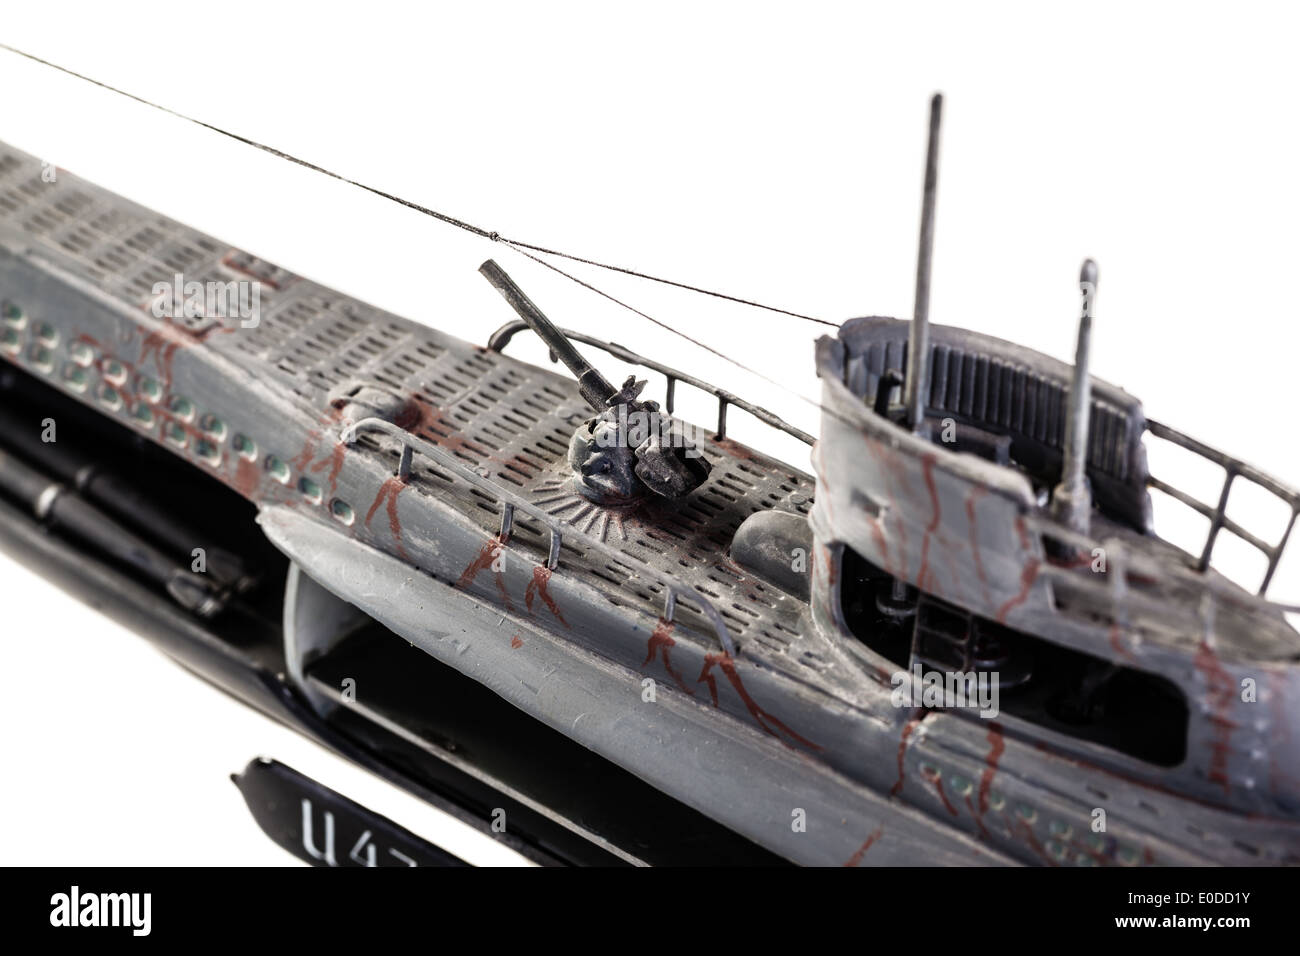 Le sous-marin allemand U-47 était un type VII B U-boat de l'Allemagne nazie a construit pendant la Seconde Guerre mondiale Banque D'Images